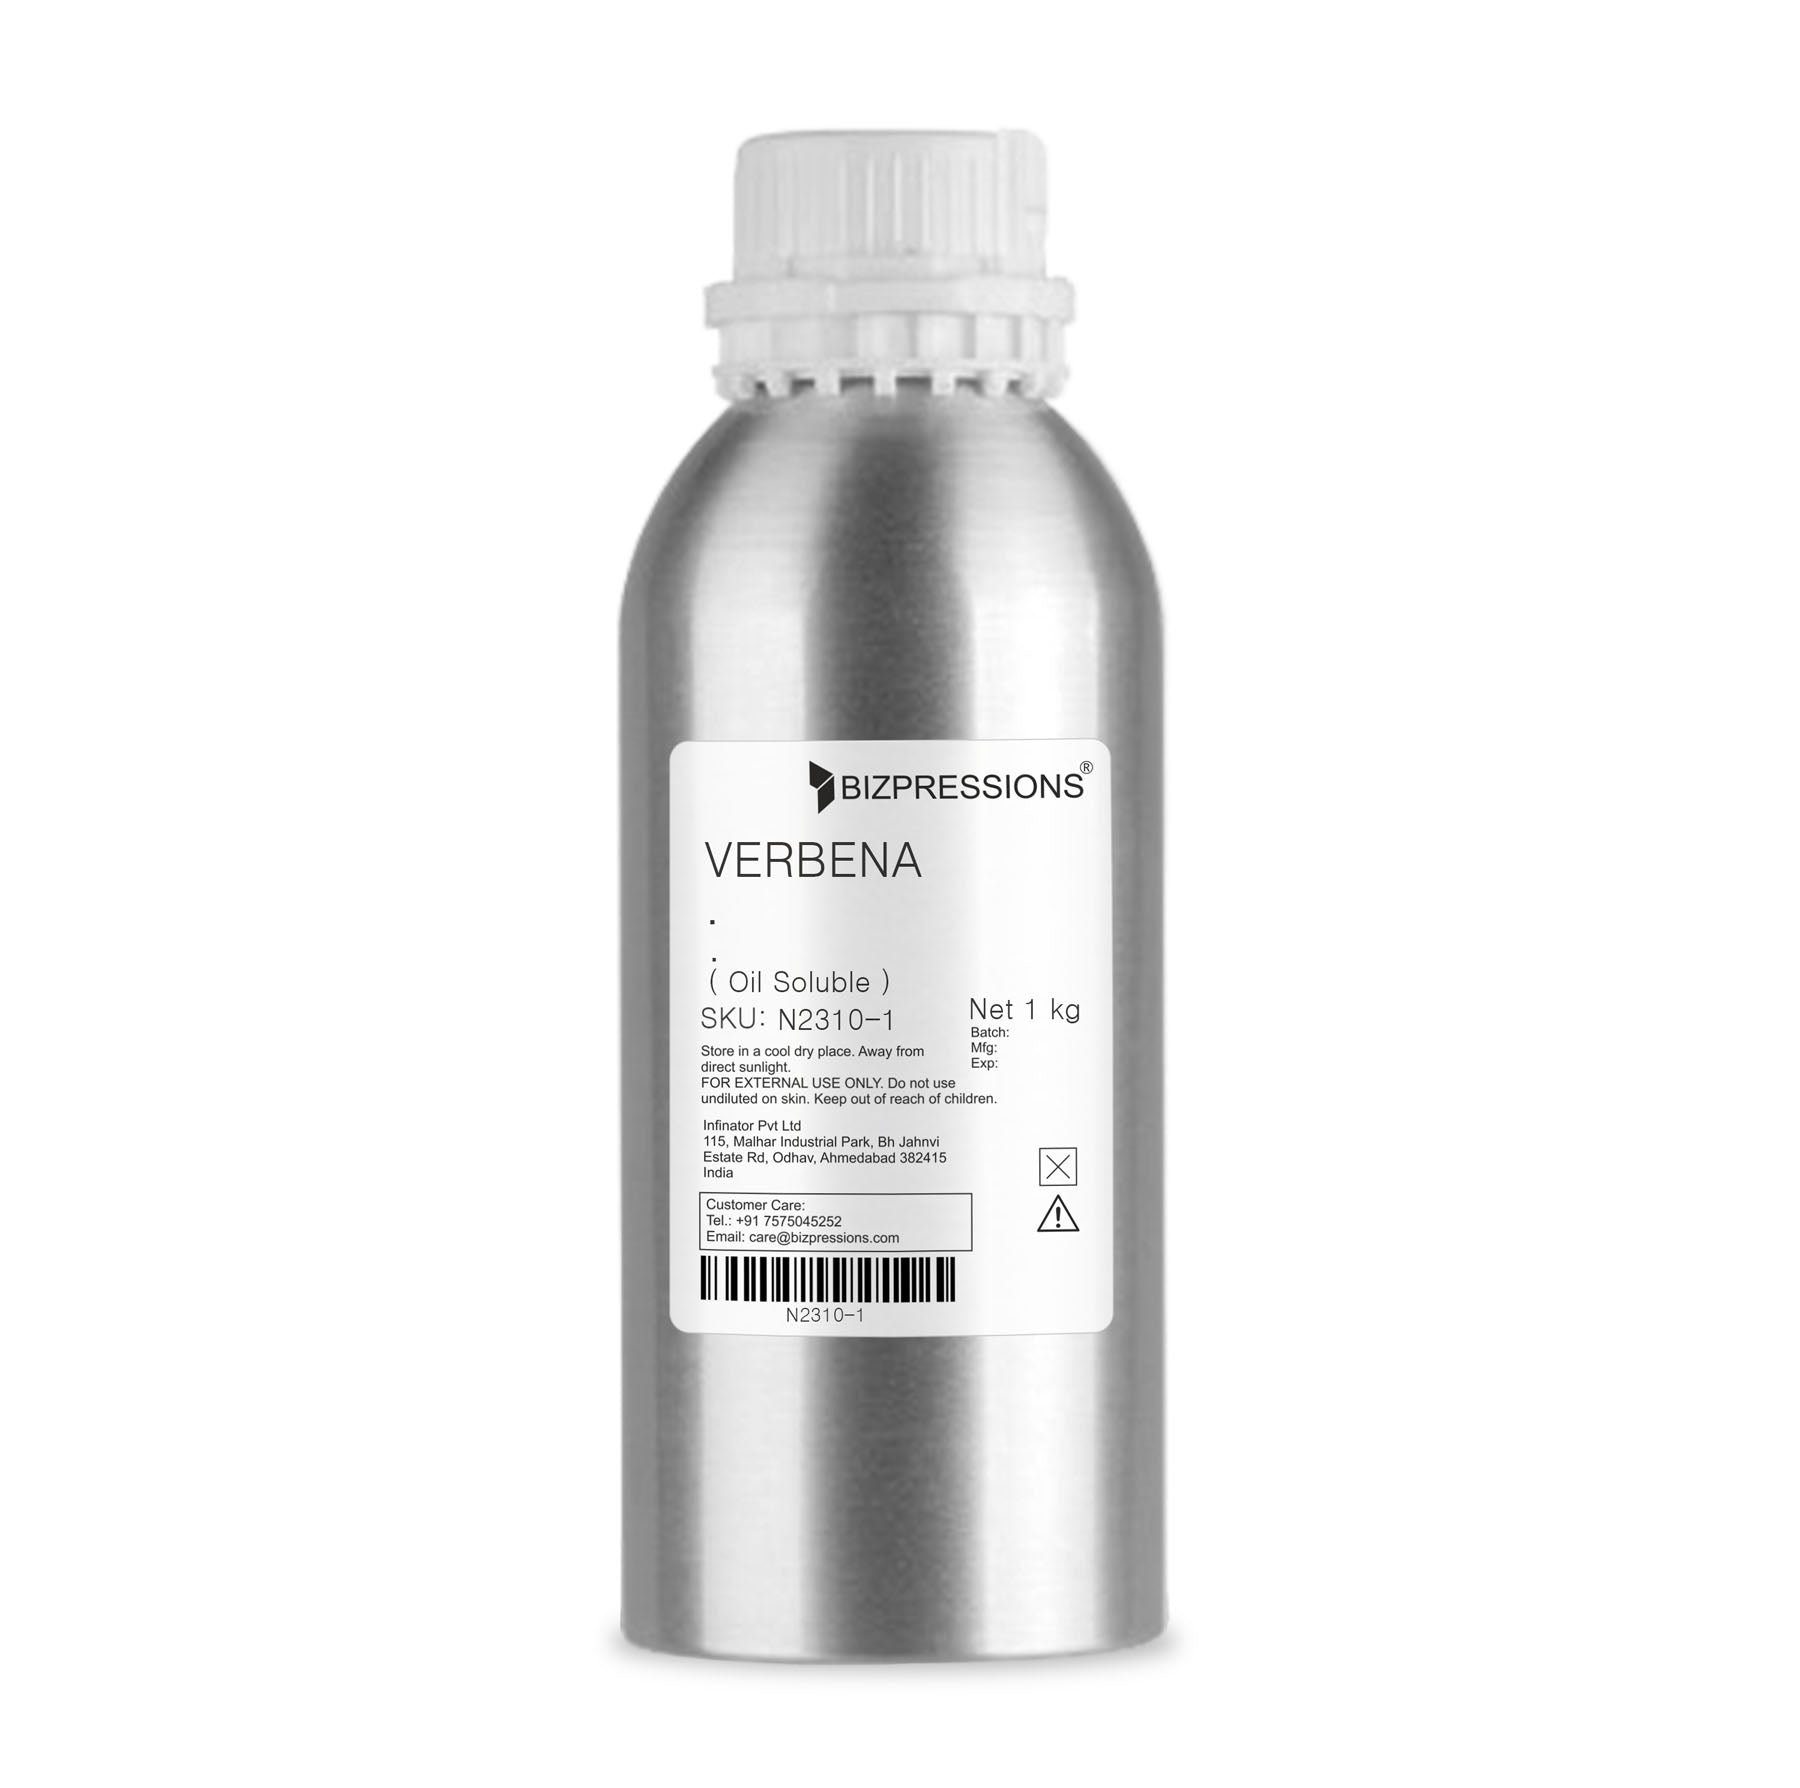 VERBENA - Fragrance ( Oil Soluble ) - 1 kg